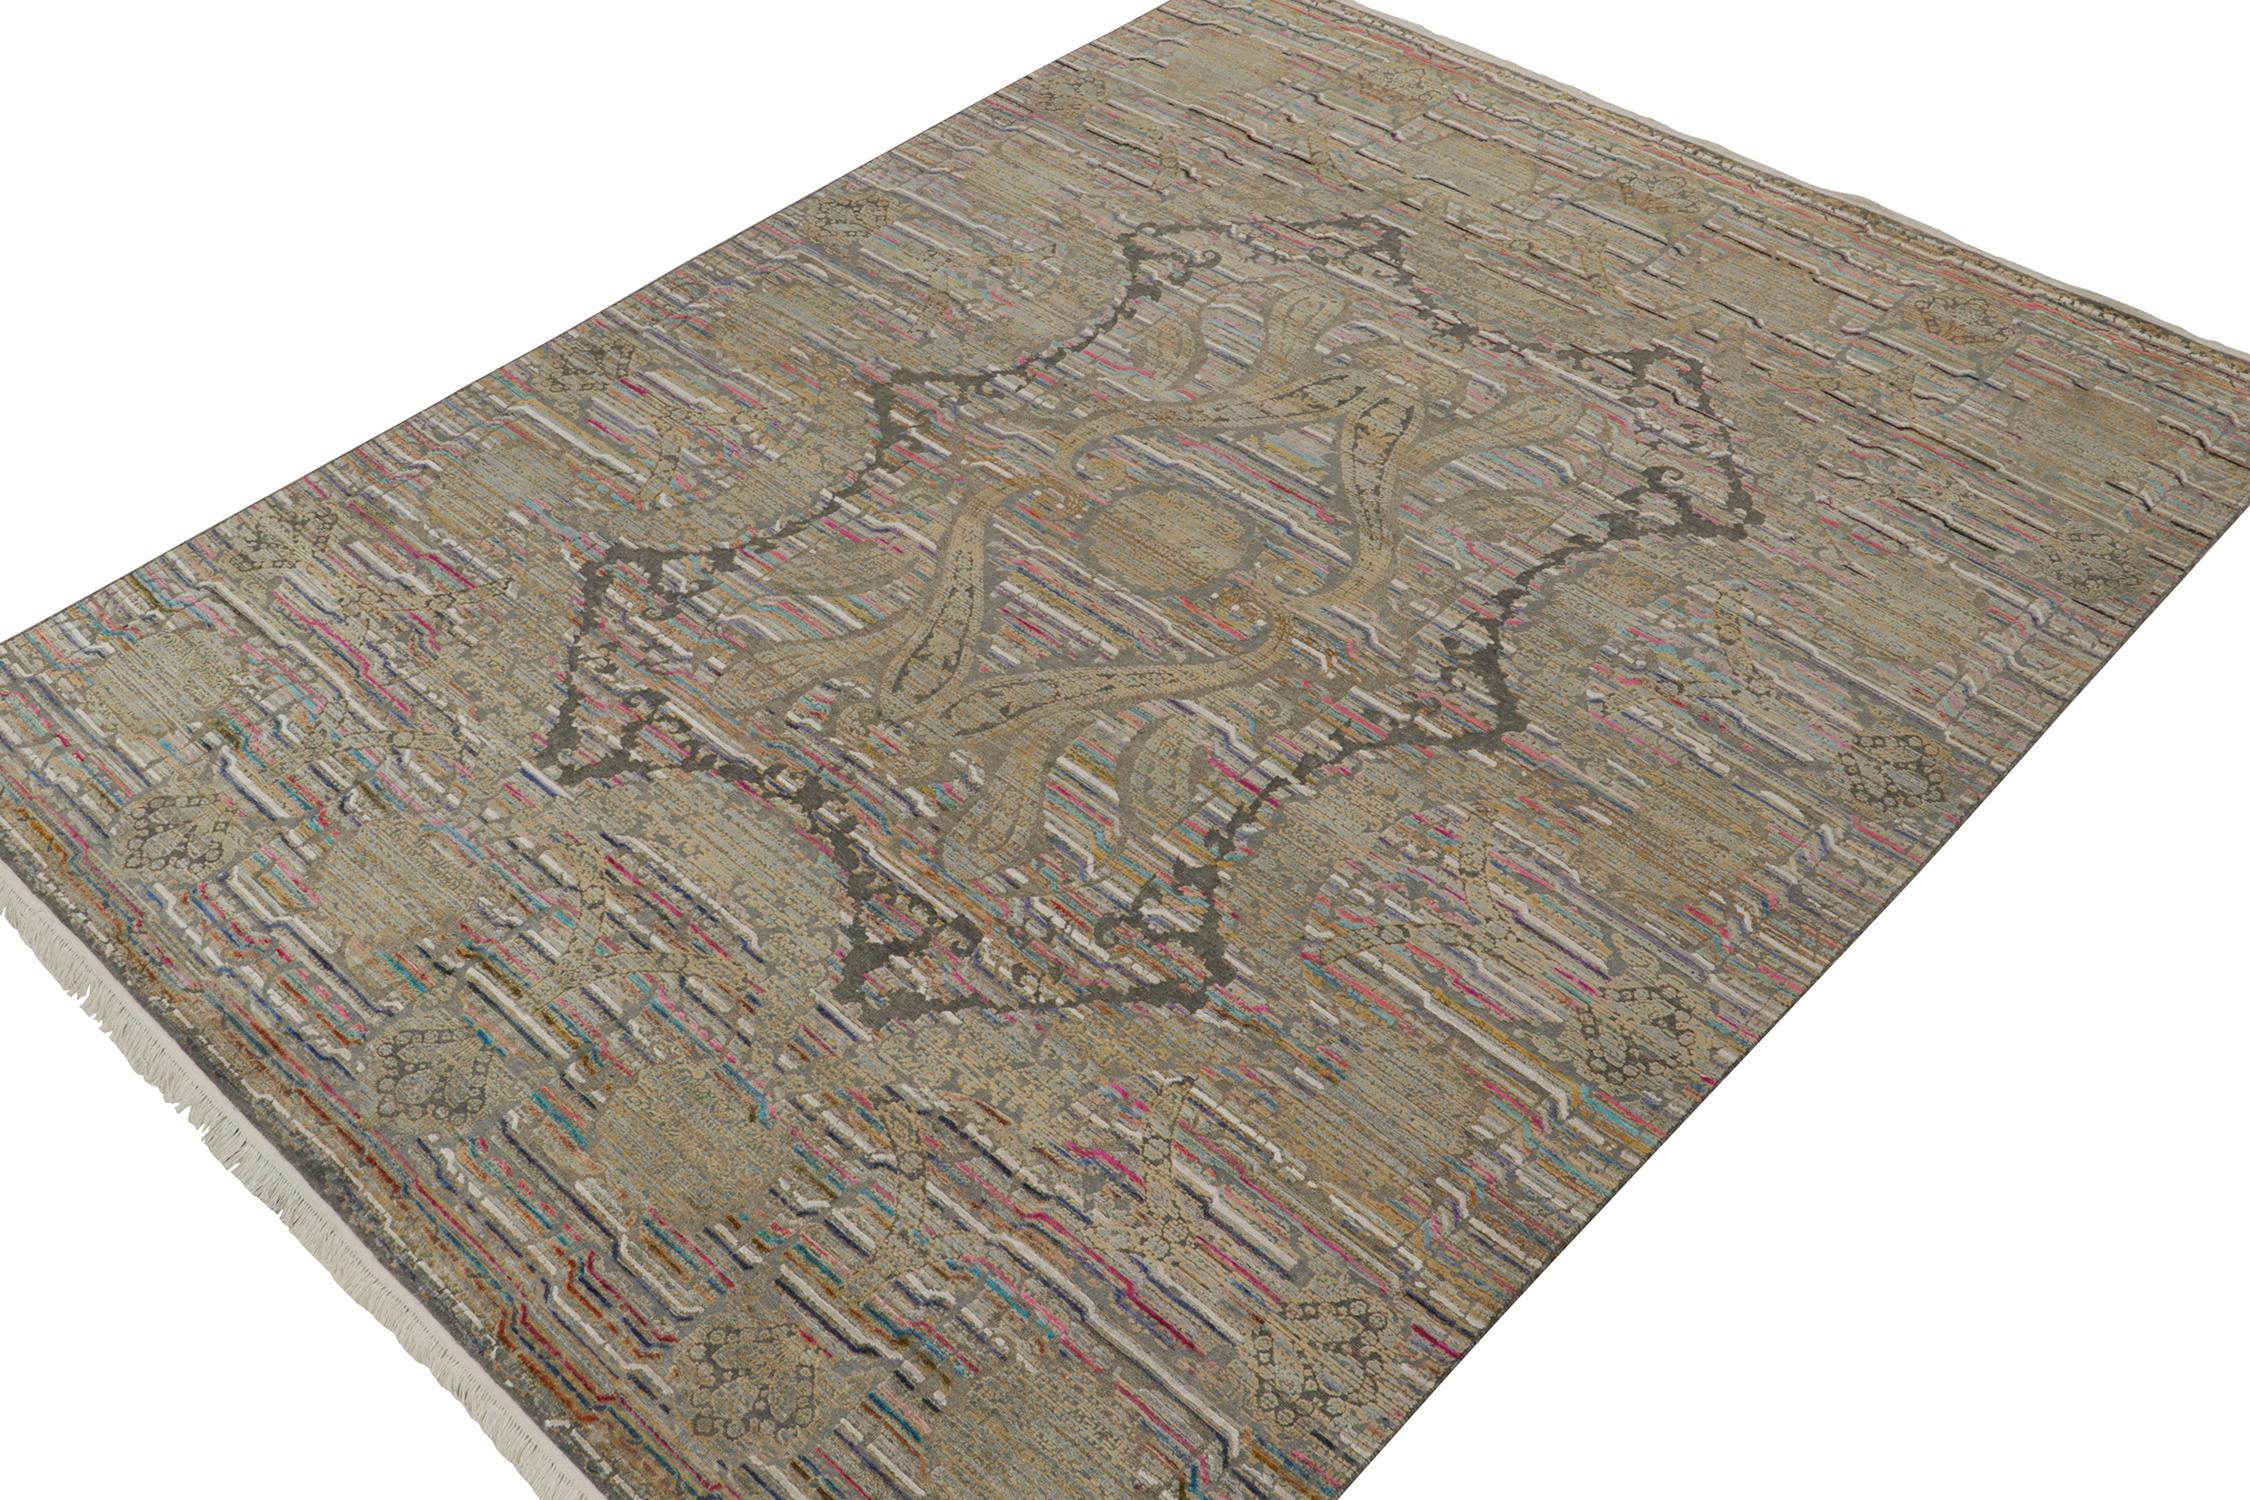 Dieser antike französische Deco-Teppich im Format 9x13 ist die nächste Ergänzung zu Rug & Kilim's seltener Auswahl an klassischen Teppichen. Handgeknüpft aus Wolle, ca. 1920-1930.
Weiter zum Design: 
Dieses äußerst seltene Stück ist ein Beispiel